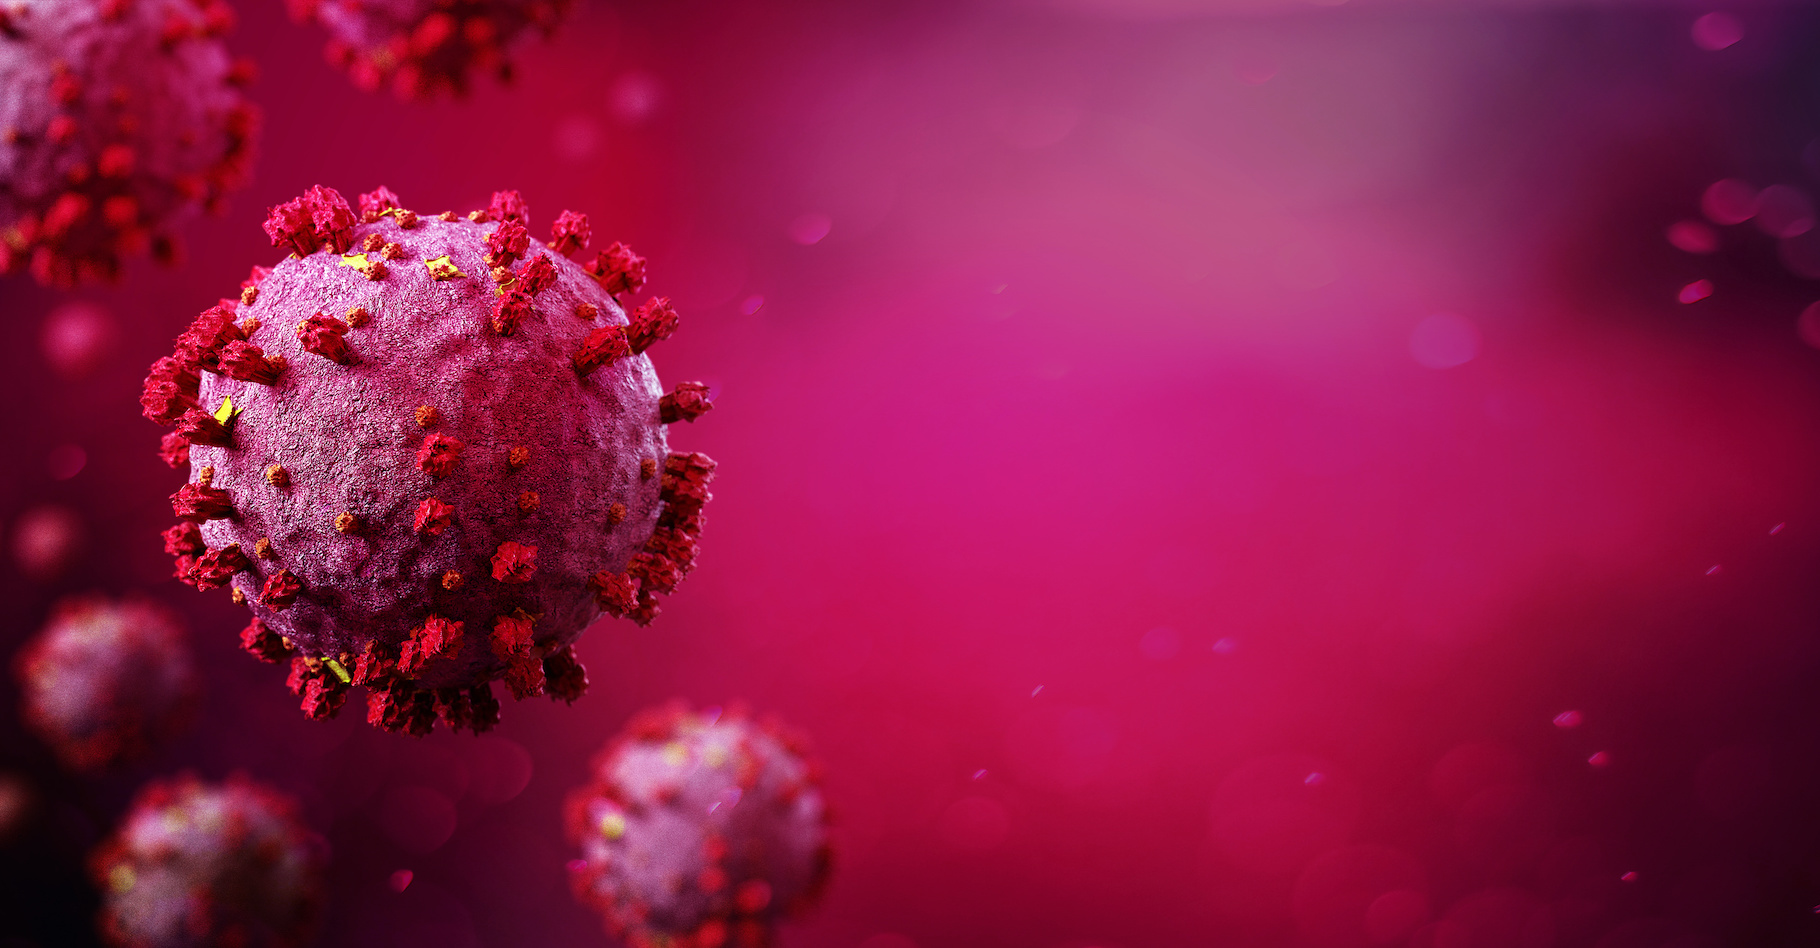 En janvier 2020, un nouveau coronavirus a été identifié en Chine : le SARS-CoV-2. Il est responsable de la pandémie actuelle de la Covid-19. Mais les chercheurs en ignorent encore l’origine exacte. © Production Perig, Adobe Stock